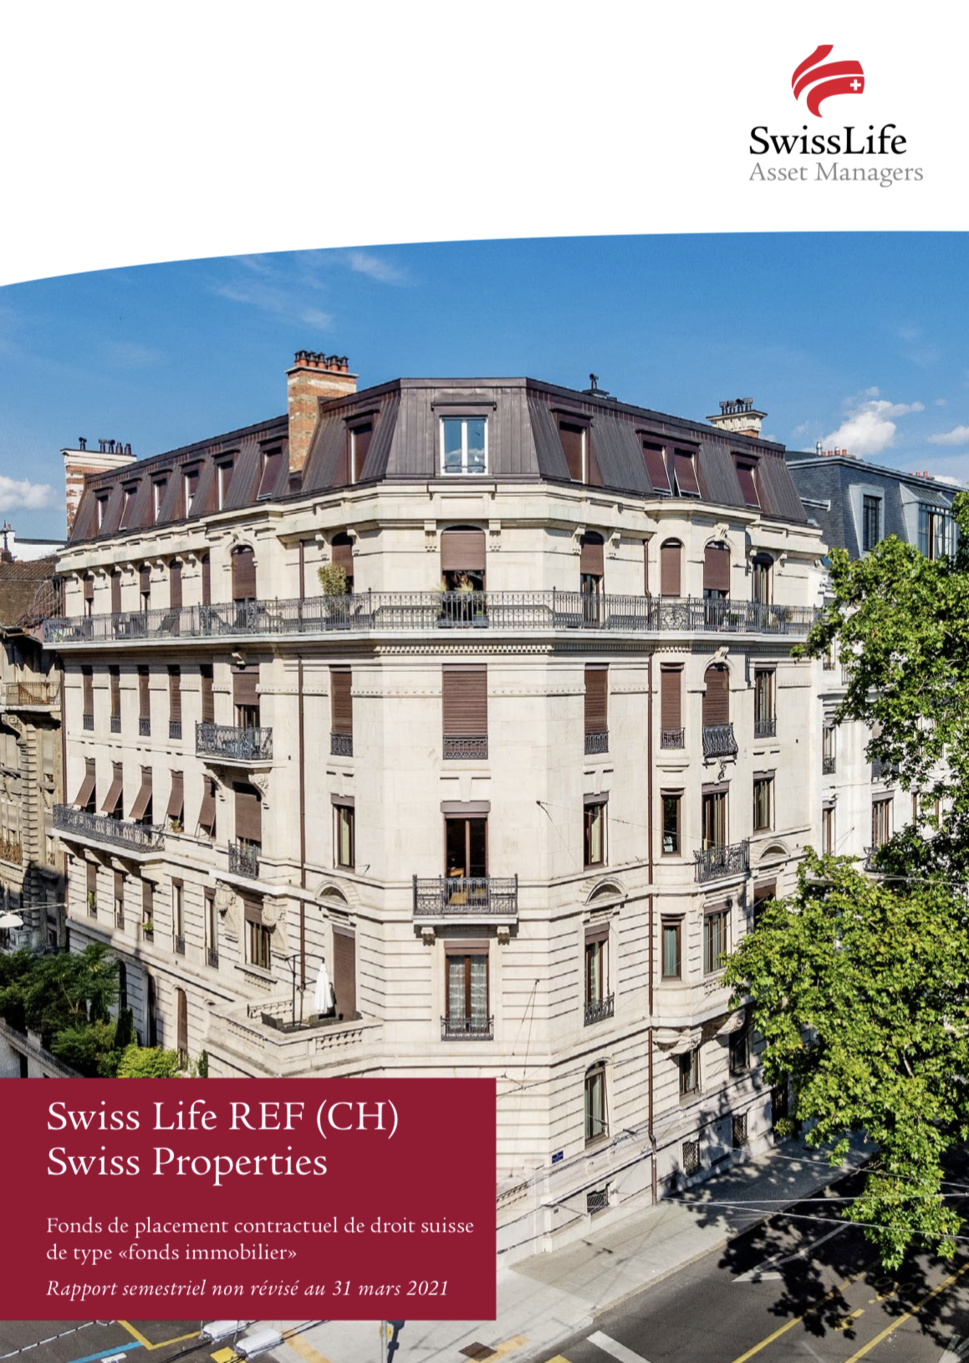 Swiss Life REF (CH) Swiss Properties: poursuite de la stabilisation du portefeuille grâce à une diversification aux emplacements centraux et à une augmentation de la part d'habitation